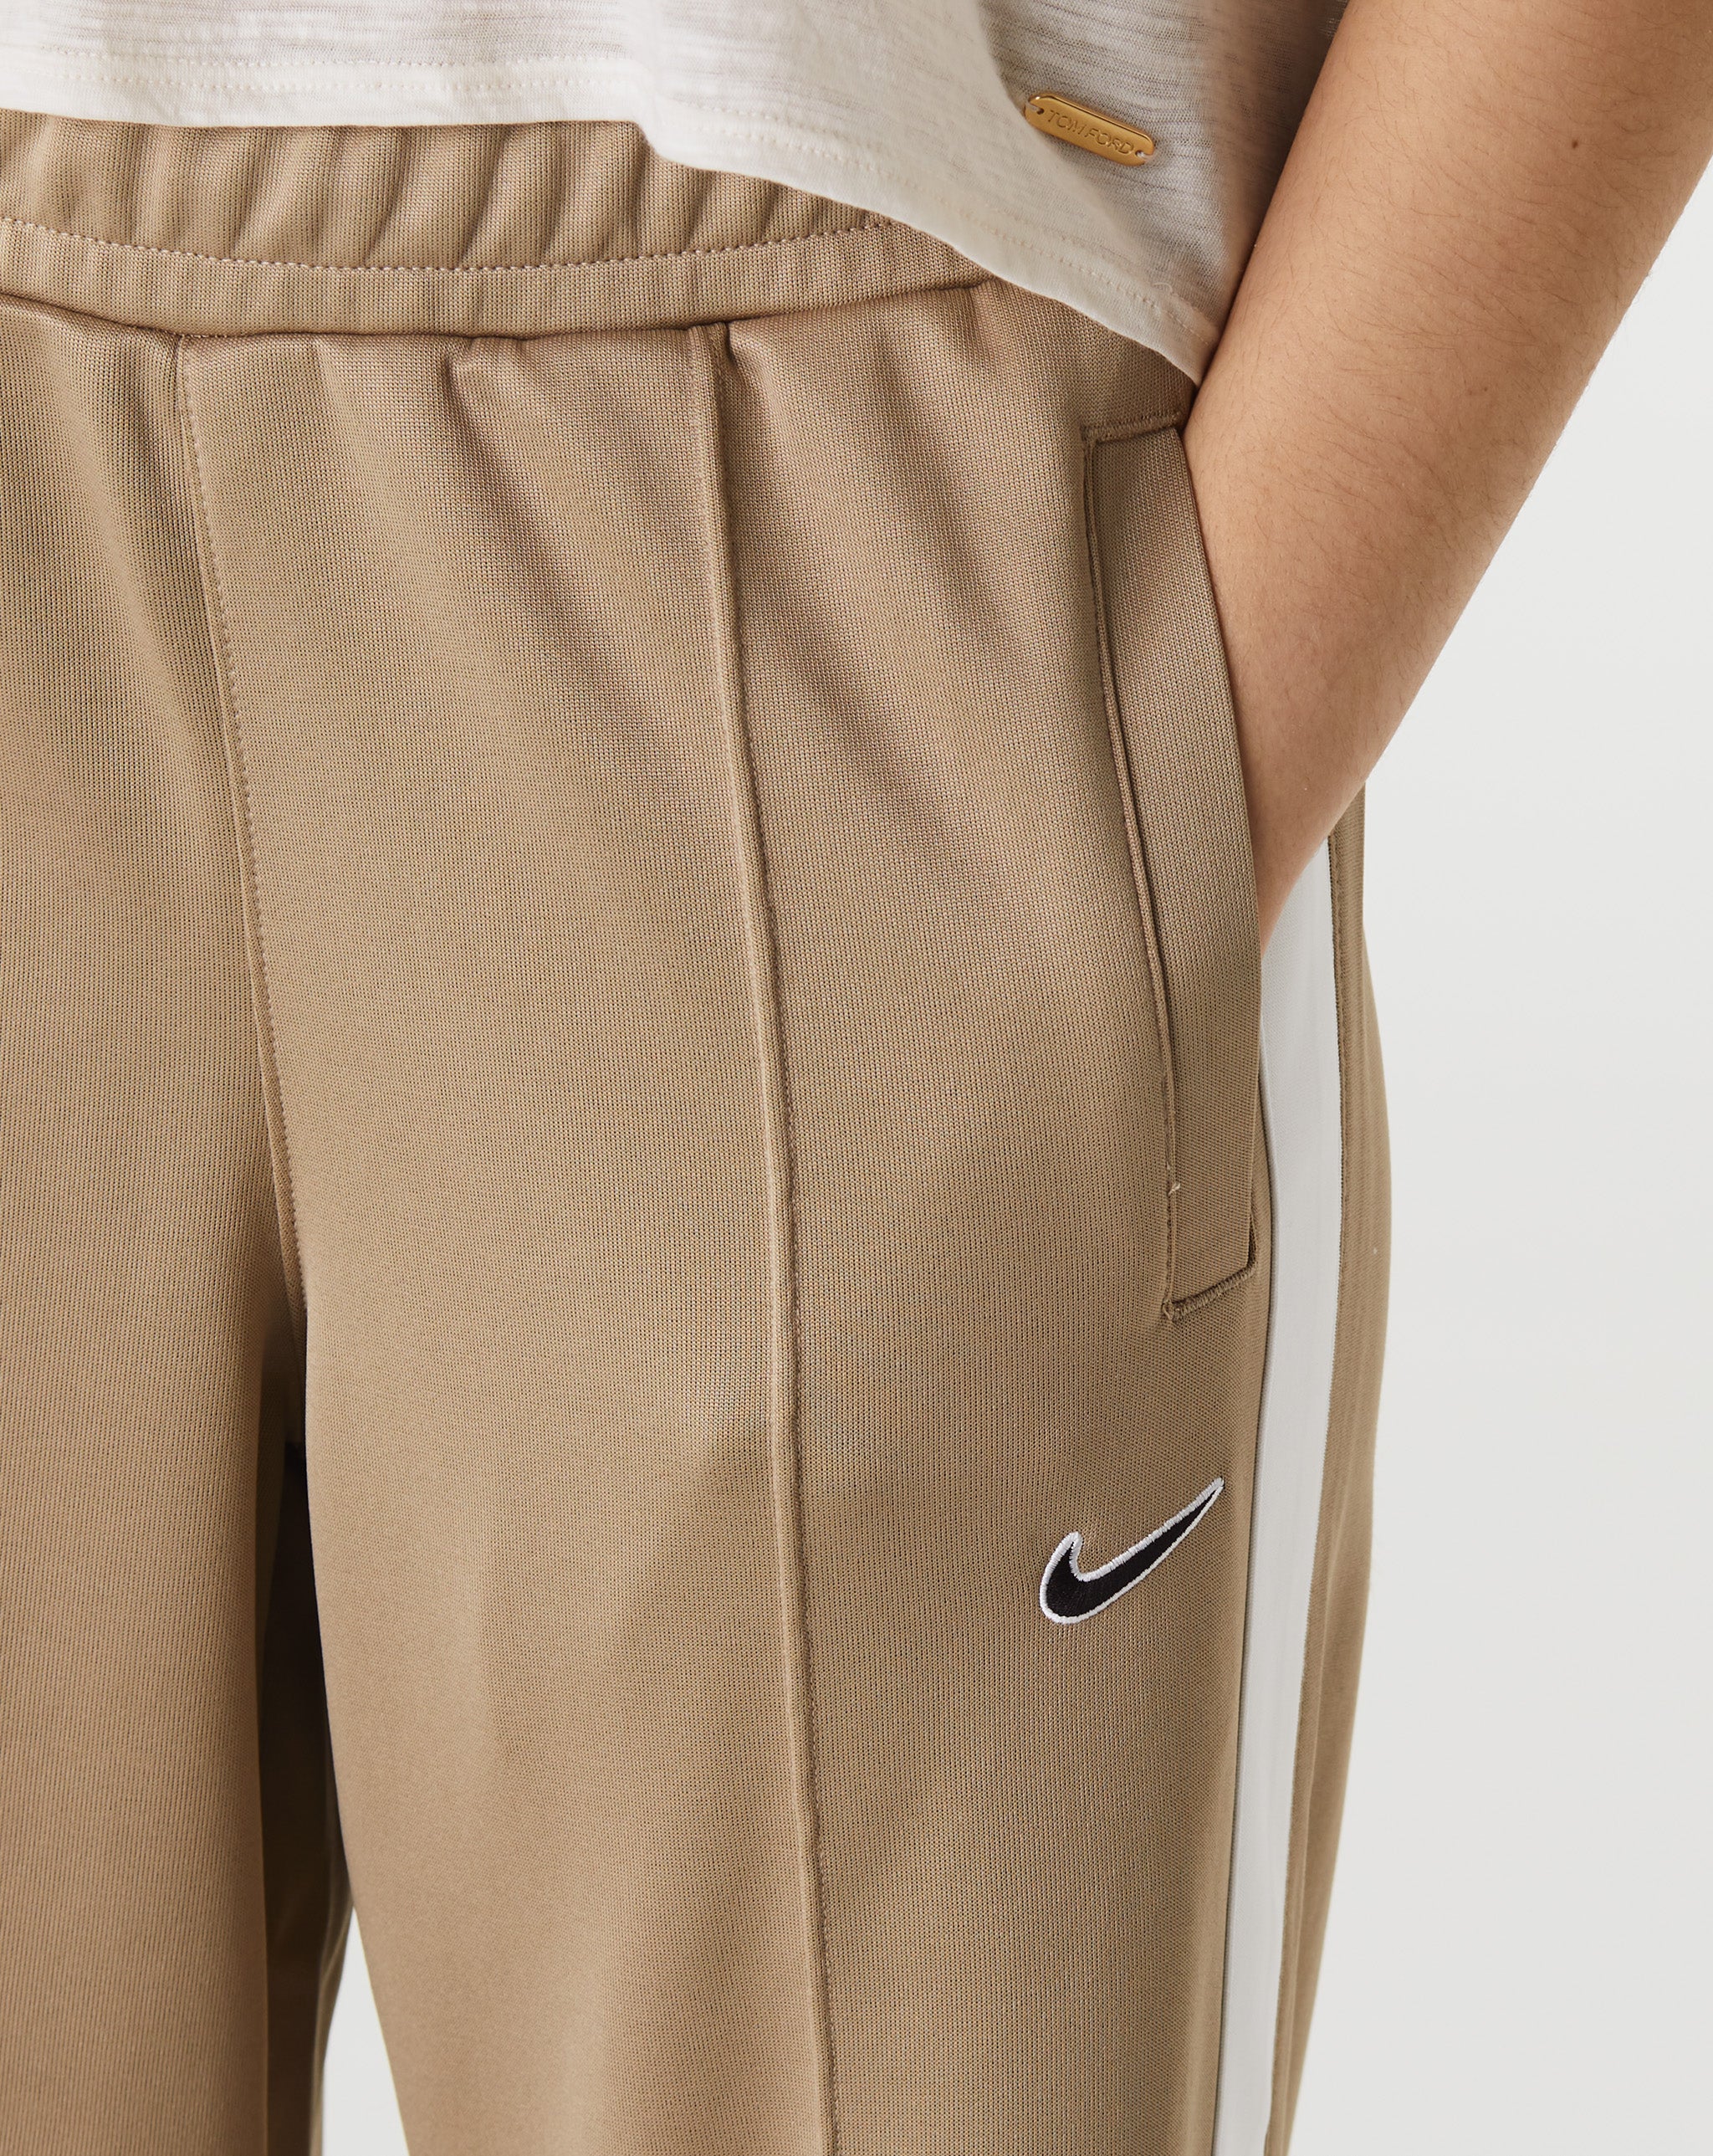 Nike Women's Pants  - Cheap 127-0 Jordan outlet